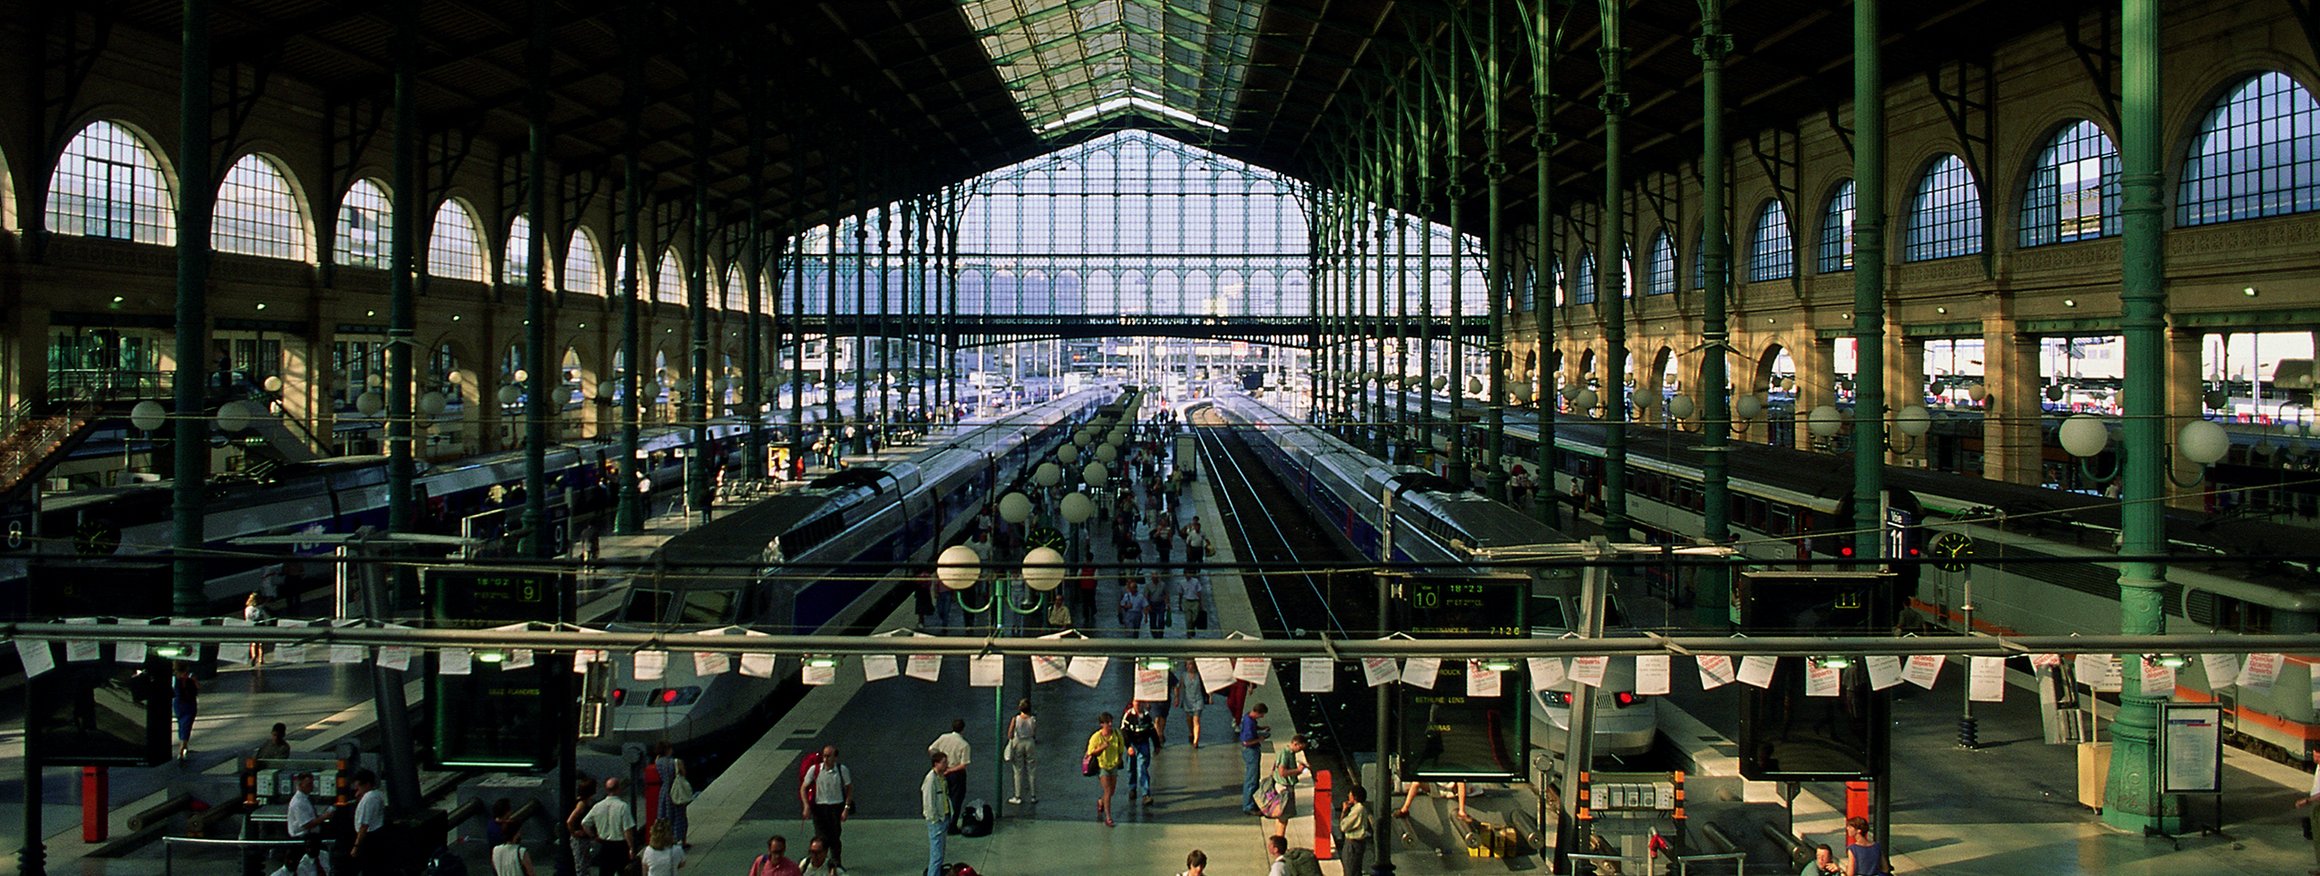 Eine große Bahnhofshalle mit Gleisen, Bahnsteigen und sehr vielen Menschen